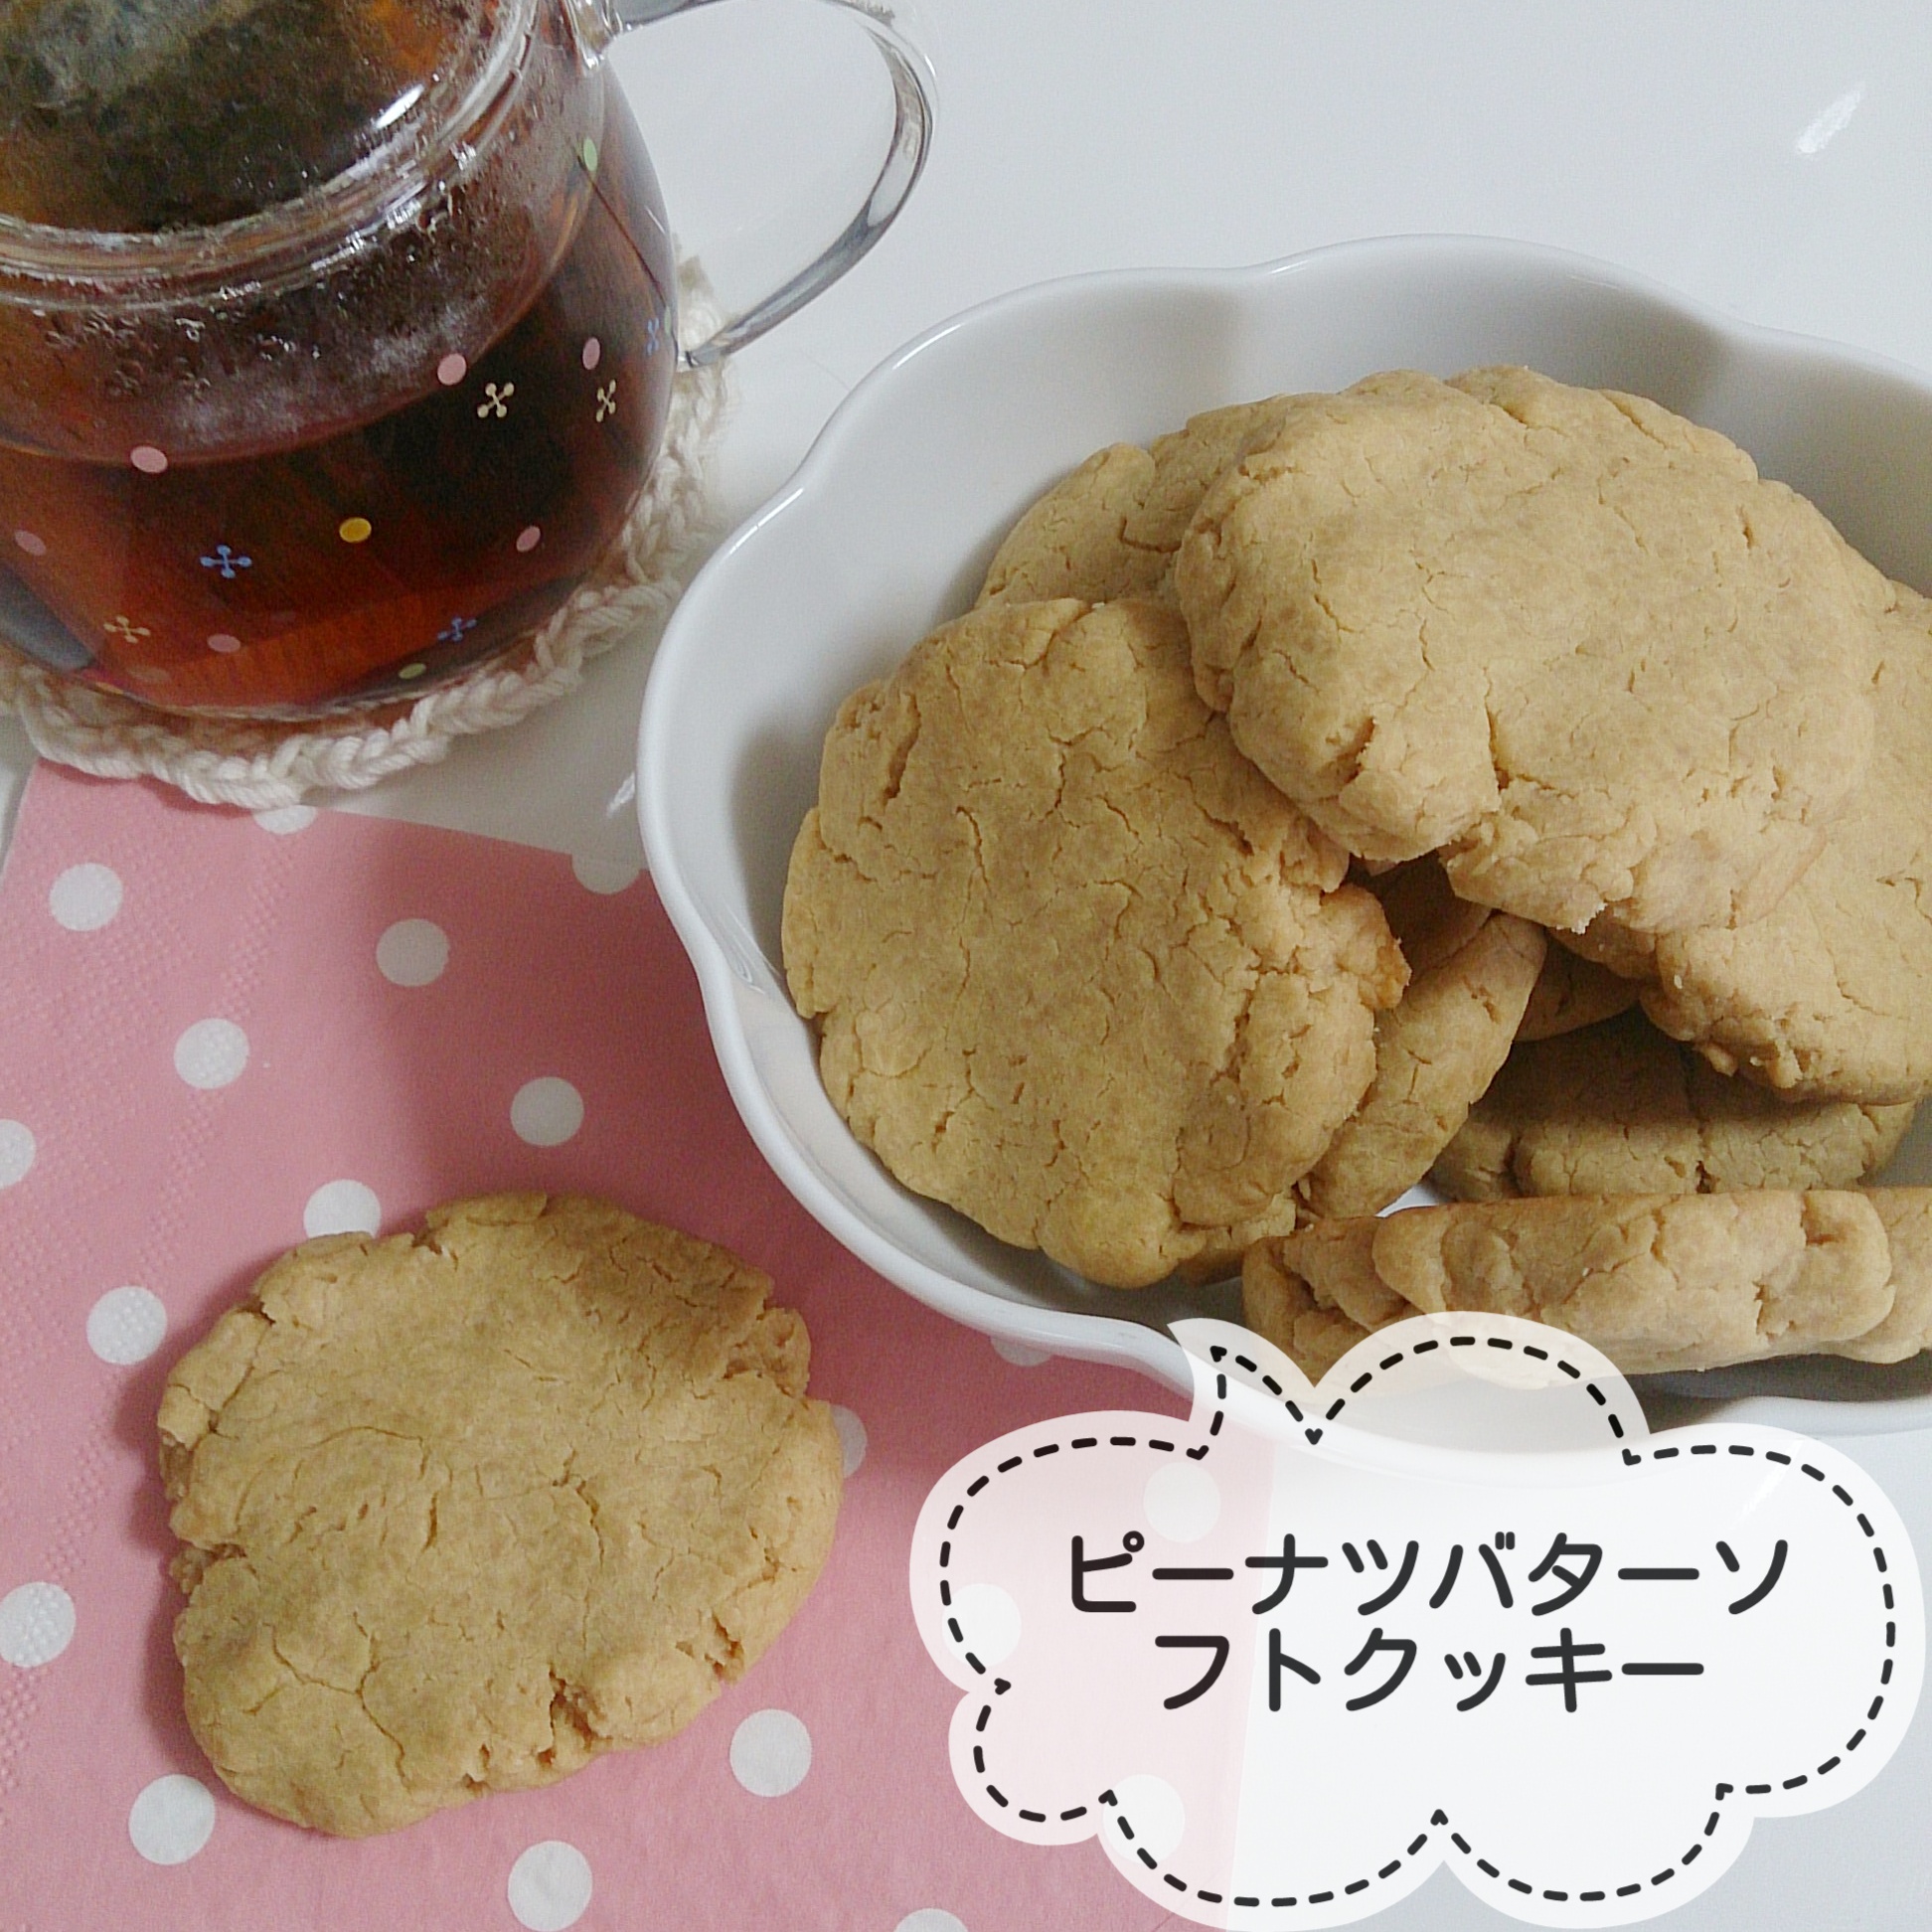 レシピレポ]白崎裕子さん『あたらしいおやつ』より「ピーナッツバターソフトクッキー」作ってみました | おうちですごそう